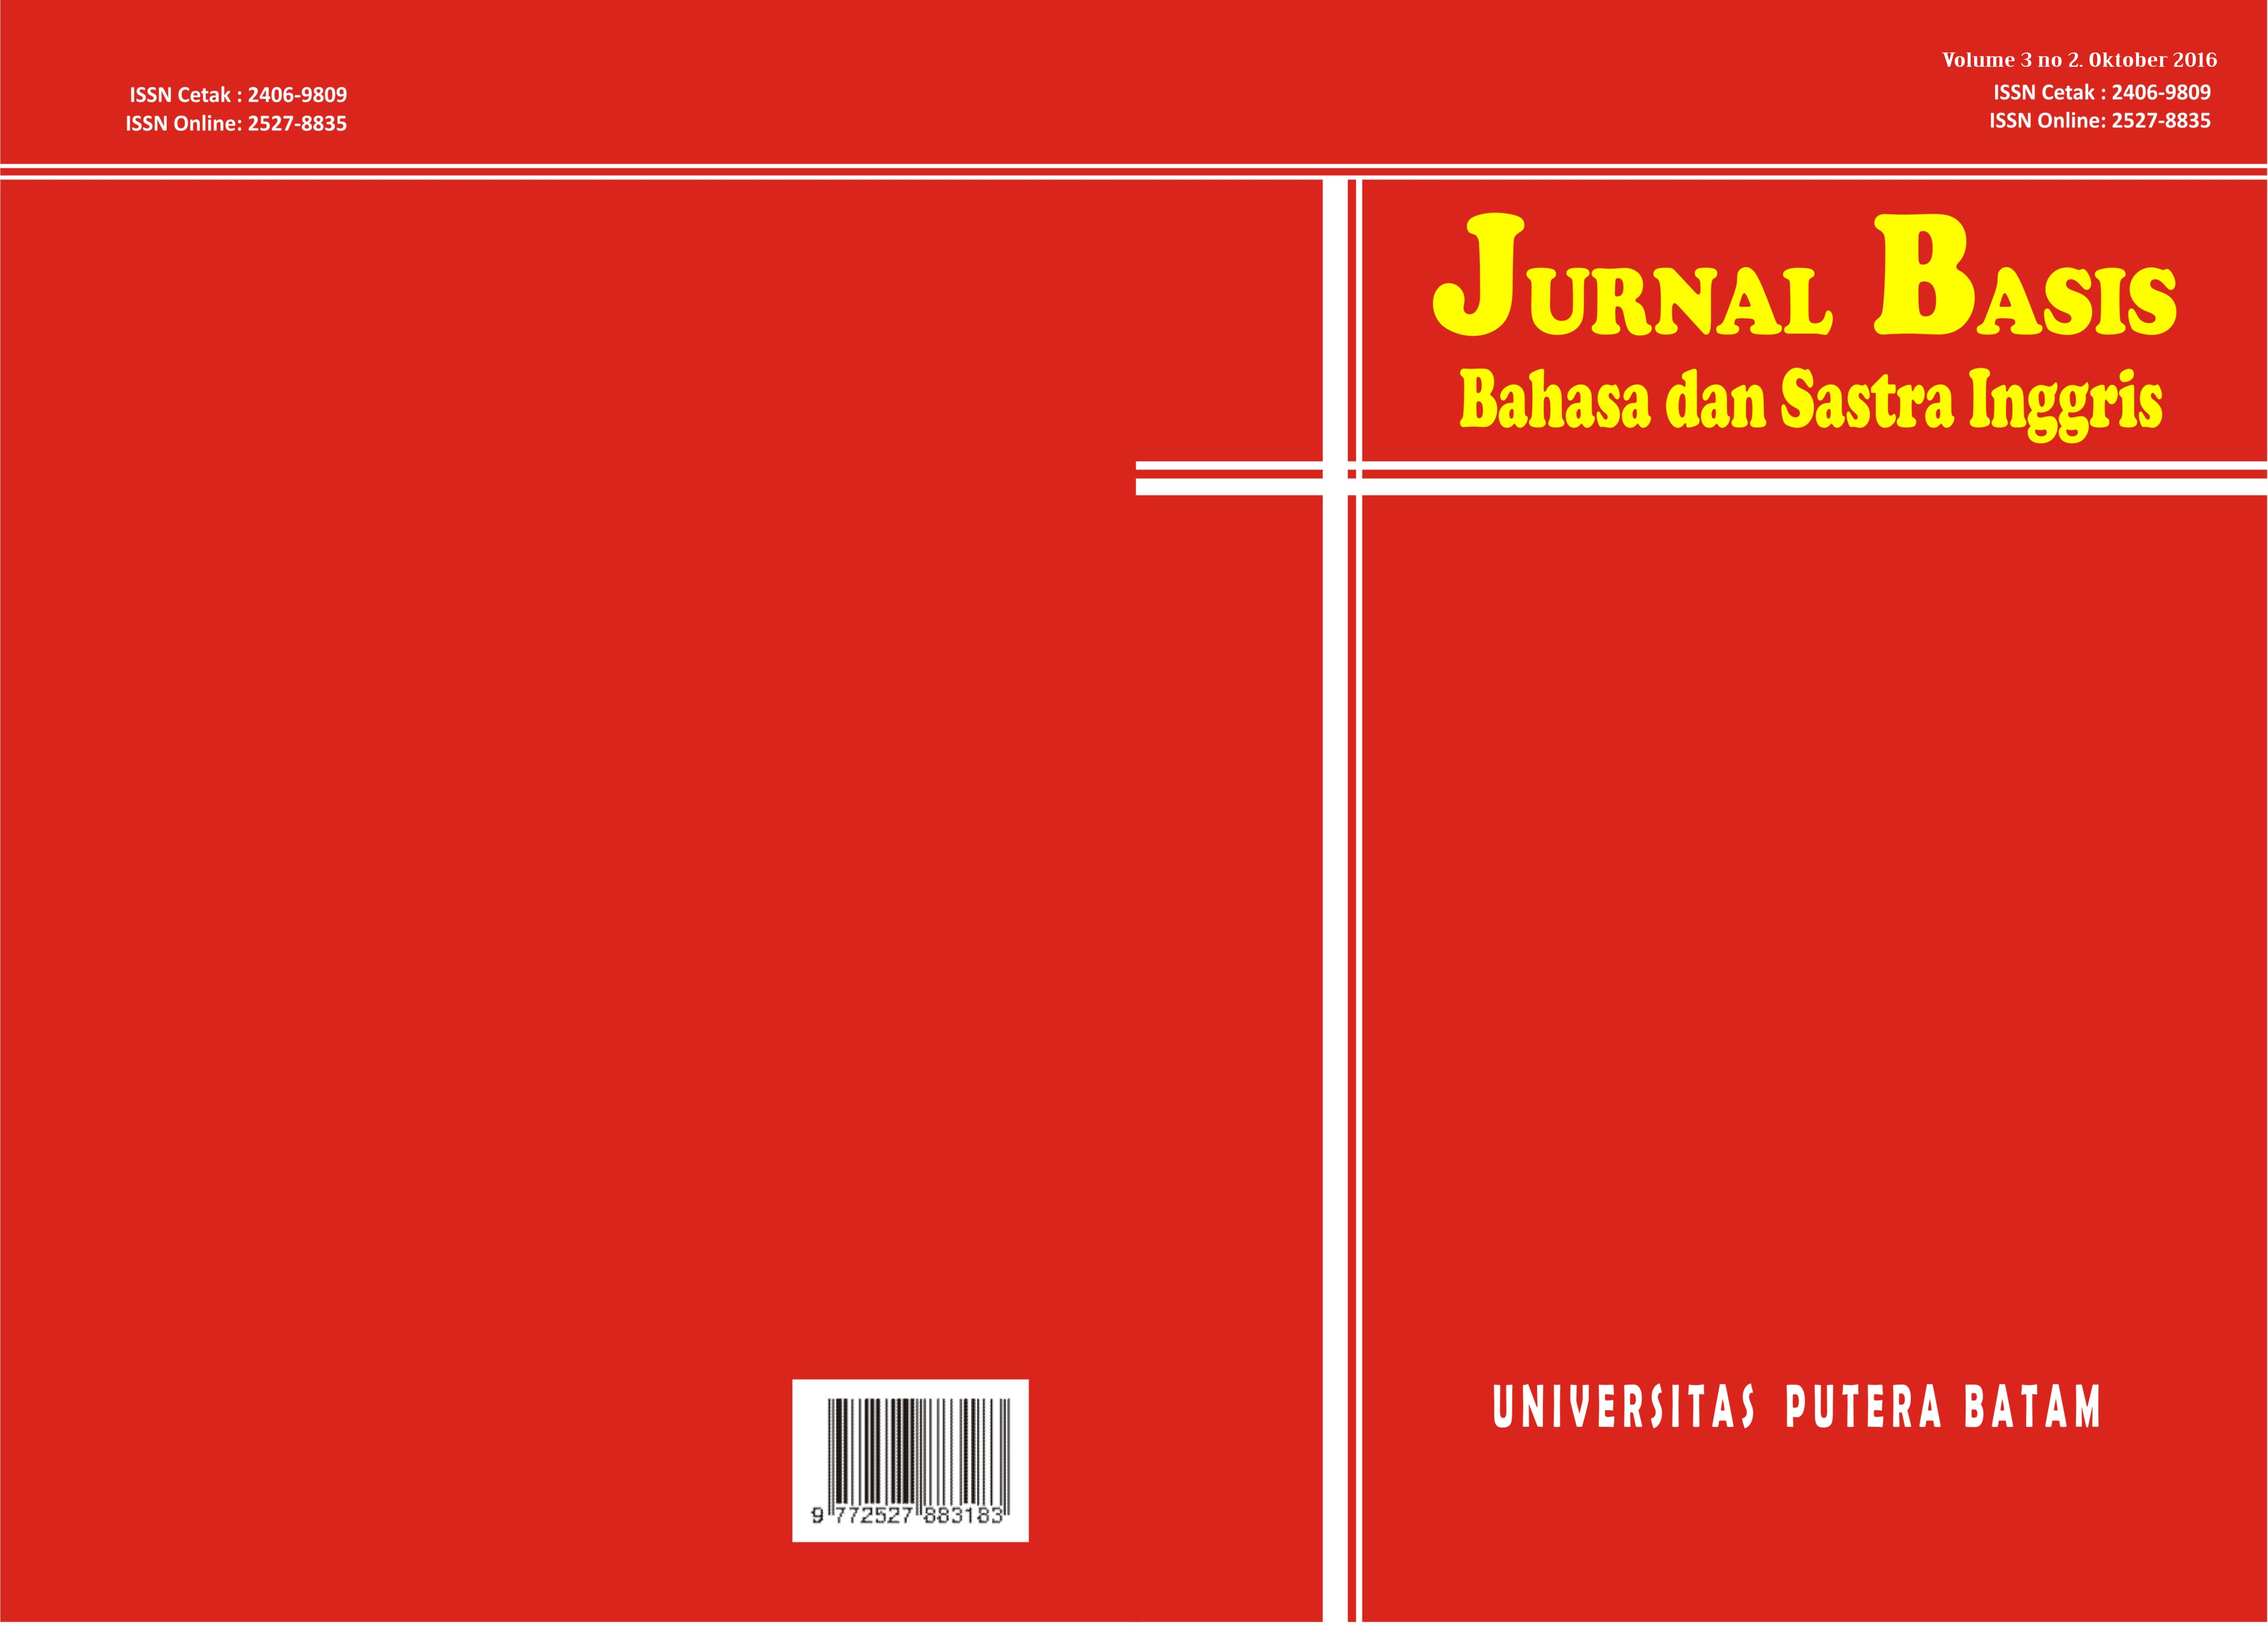 					View Vol. 3 No. 2 (2016): JURNAL BASIS UPB
				